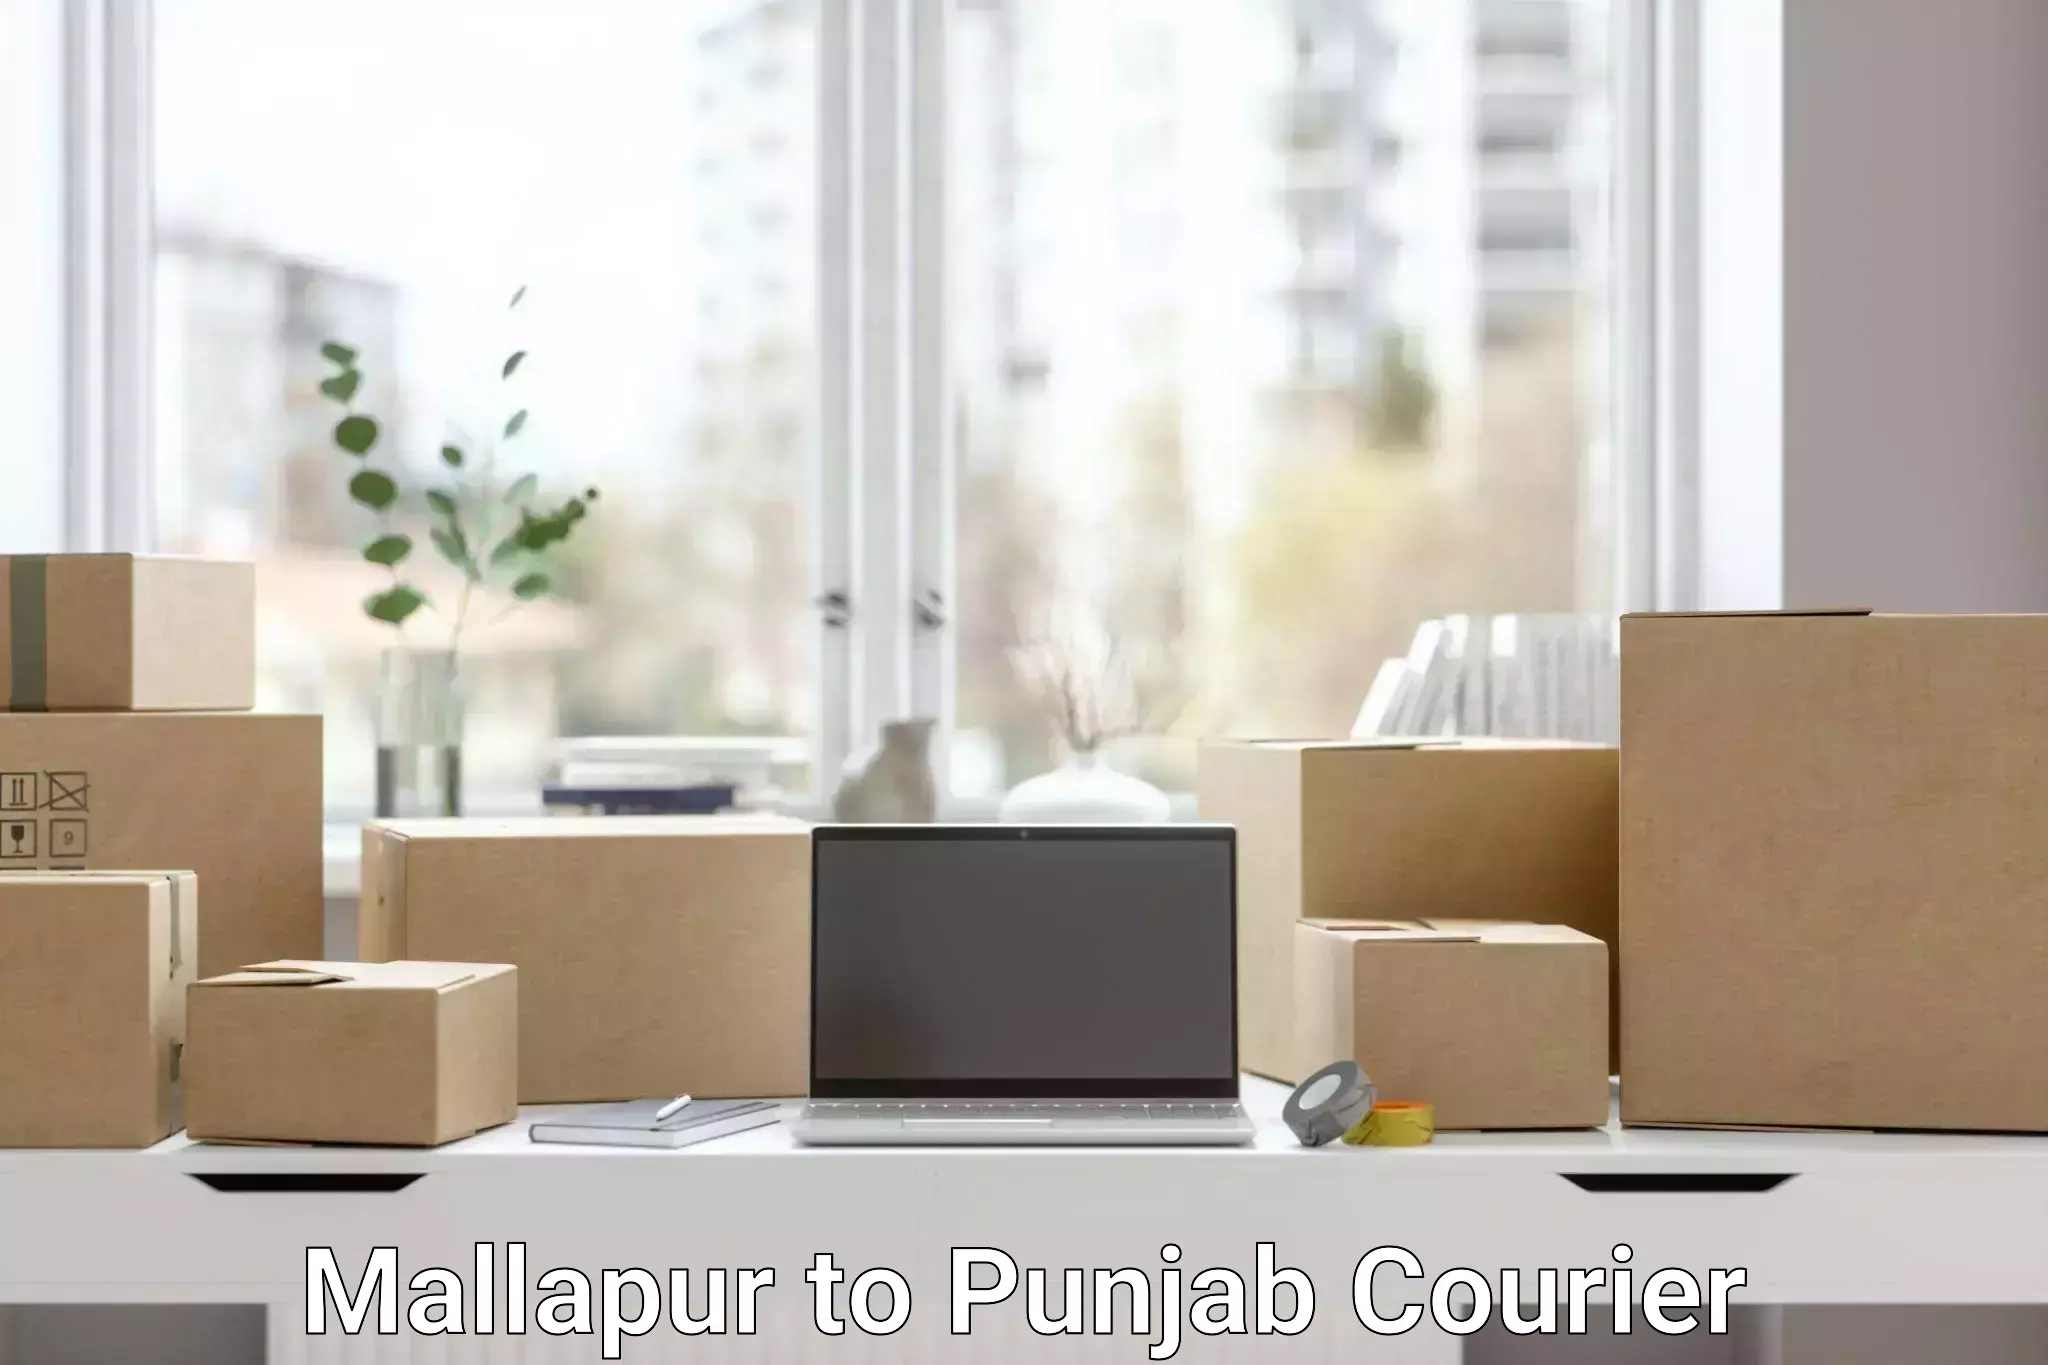 Premium courier solutions in Mallapur to Anandpur Sahib